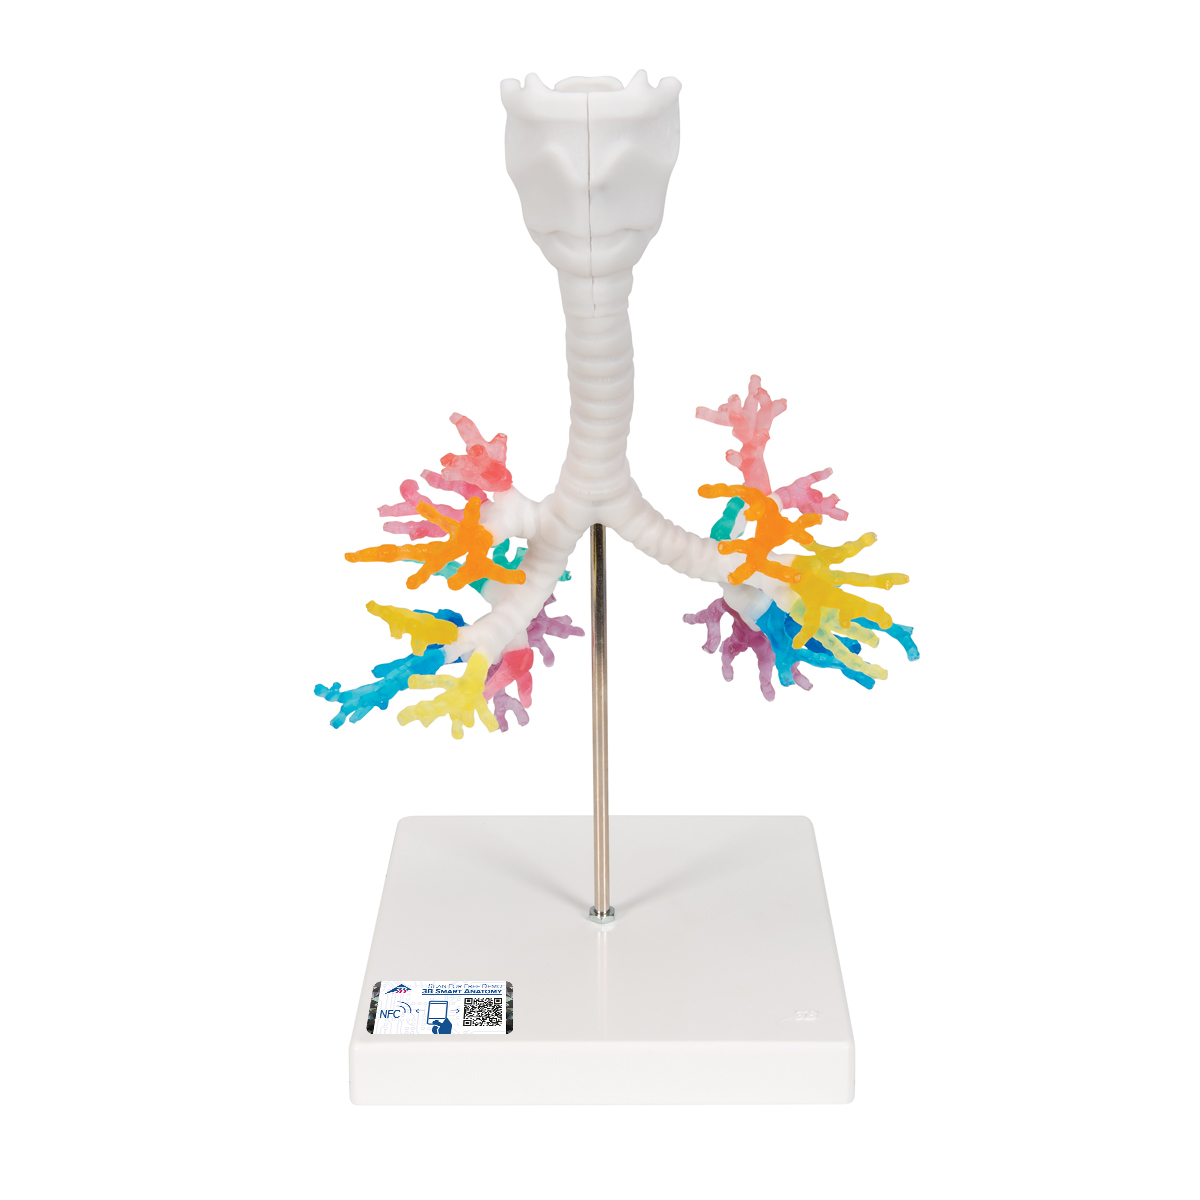 CT-Bronchialbaum Modell mit Kehlkopf - 3B Smart Anatomy, Bestellnummer 1000274, G23, 3B Scientific